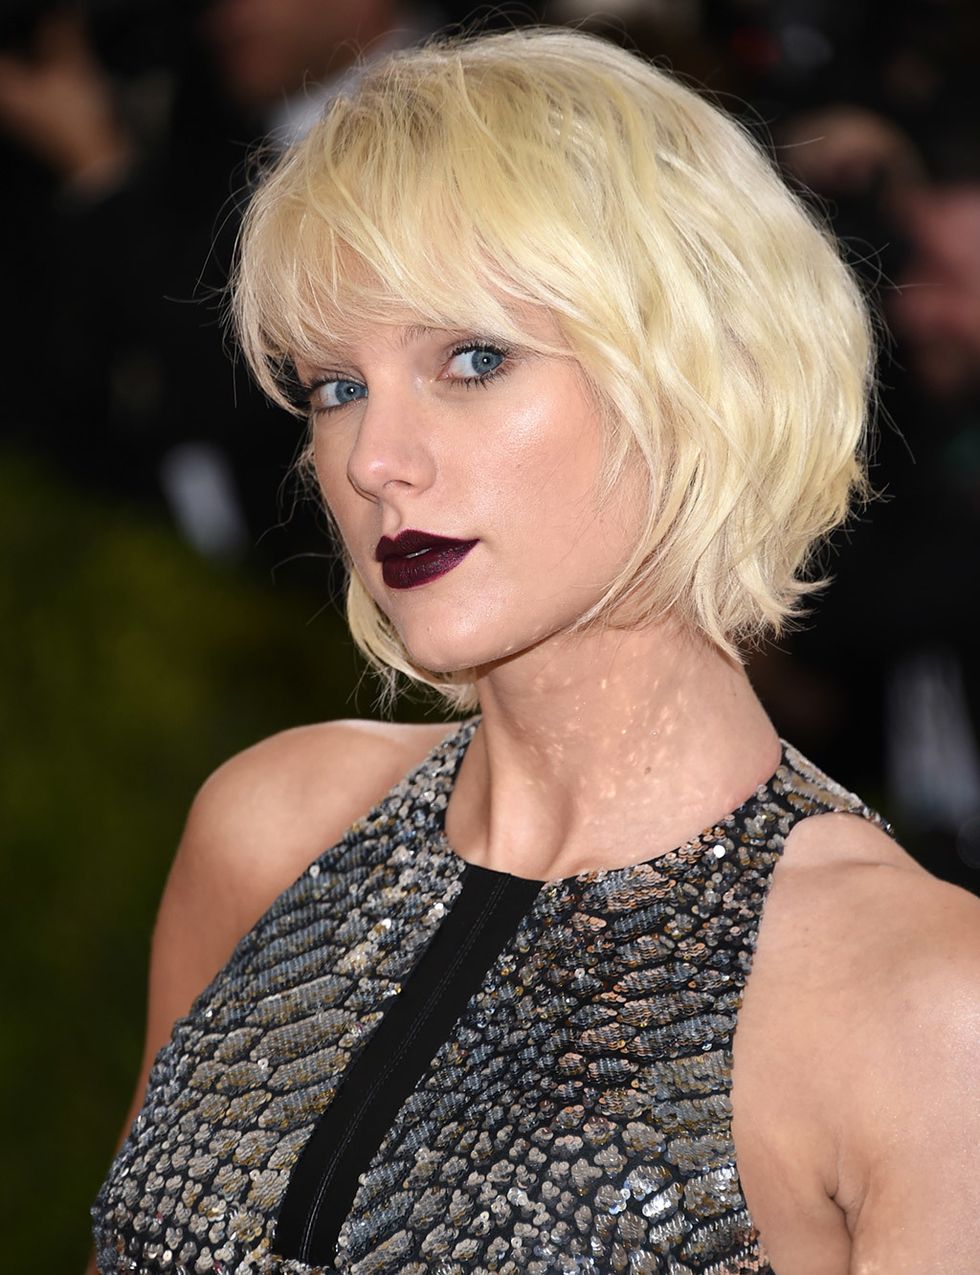 <p>En la pasada gala del MET, Taylor Swift nos sorprendió con este look tan poco propio de ella. Y sus labios 'goth', casi negros, no nos parecen tan complicados de llevar después de vérselos a ella.&nbsp;</p>